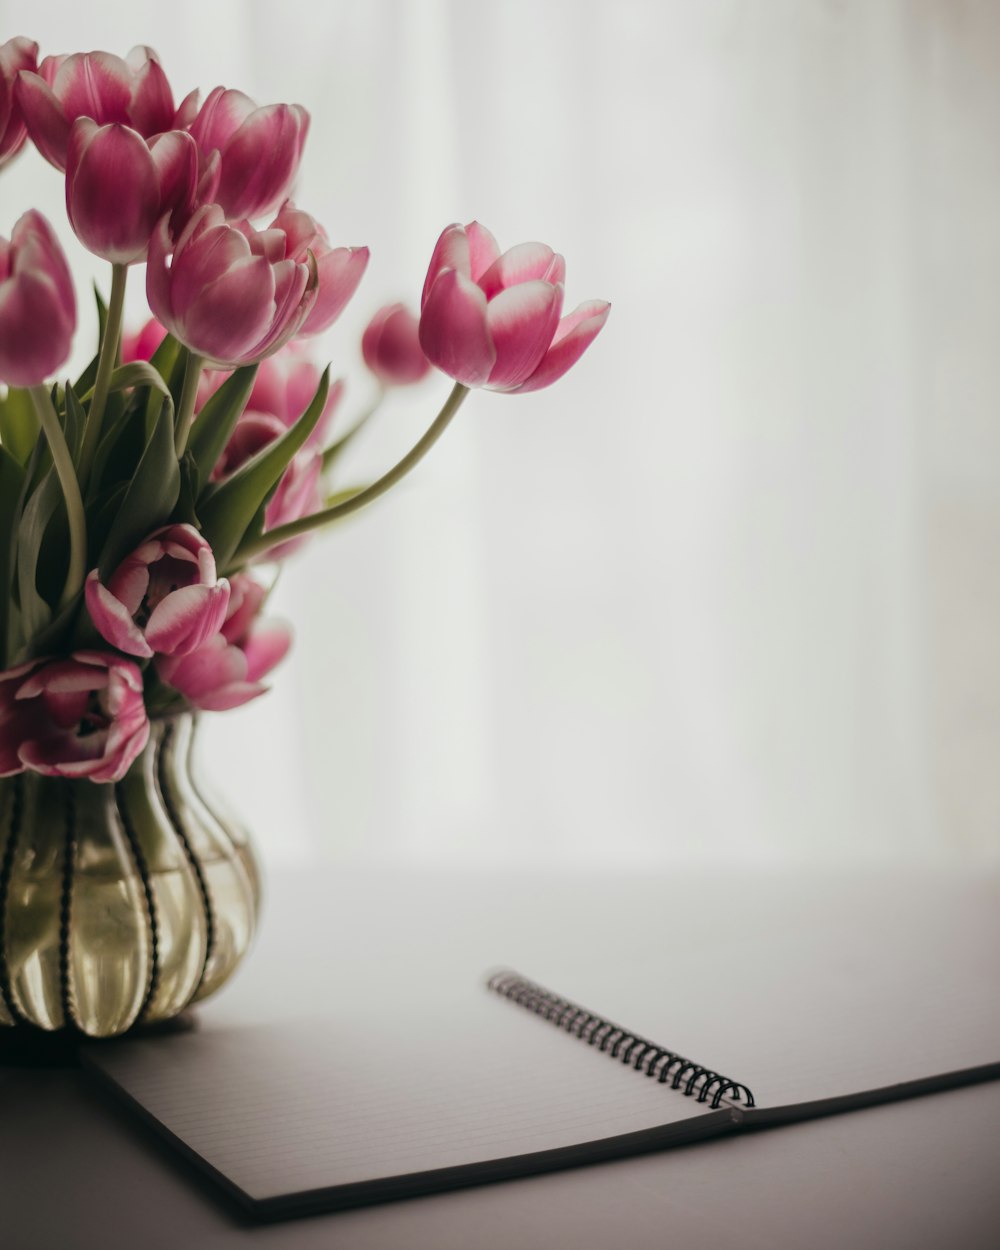 Un jarrón lleno de tulipanes rosados sentado encima de una mesa